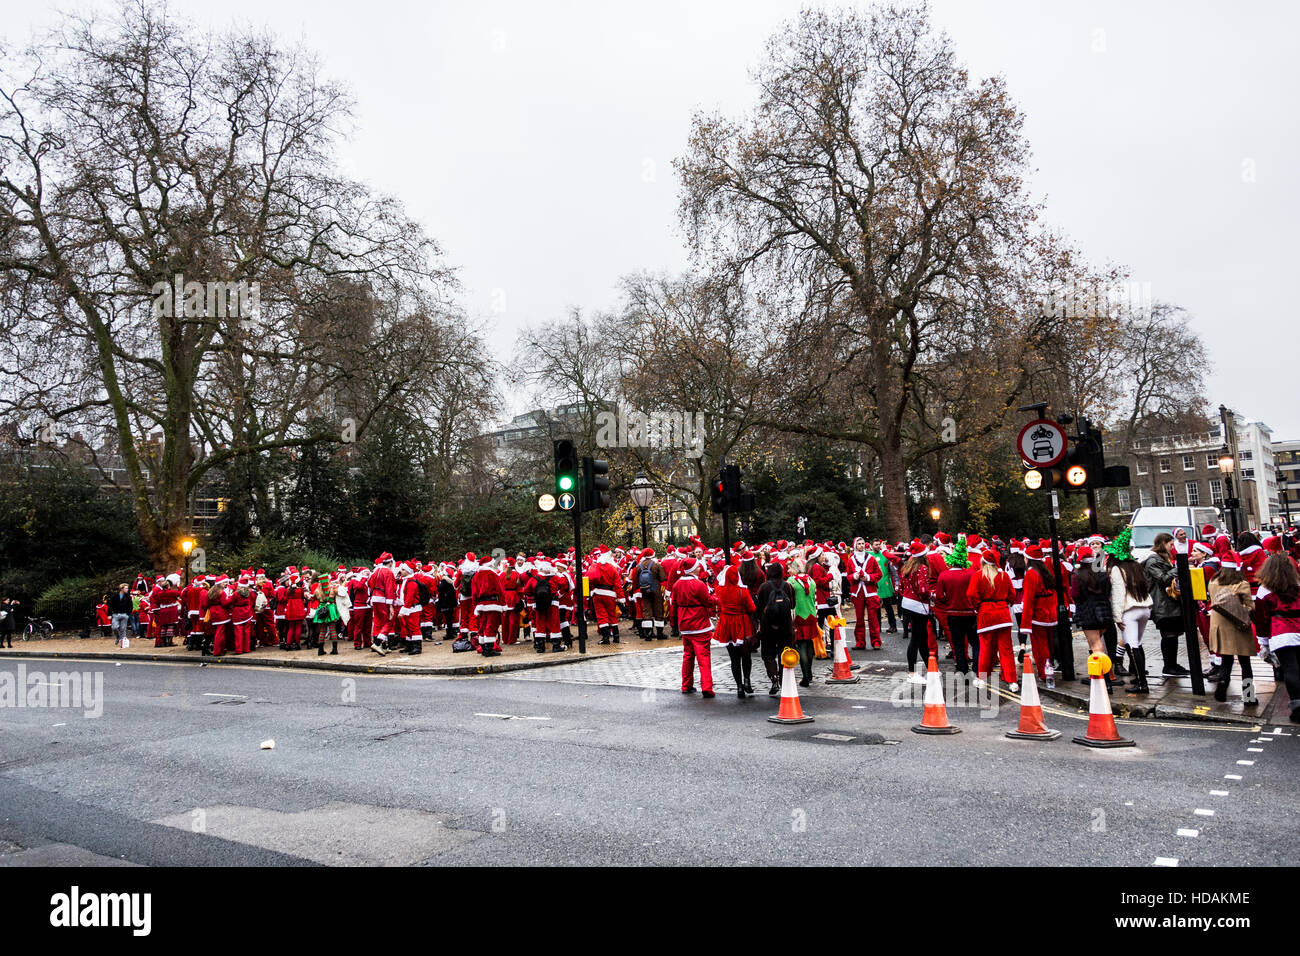 Santacon Santas auf den Straßen von London. Santacon ist eine nicht-religiöse Weihnachtsparade, die normalerweise jeden Dezember an einem Samstag in London stattfindet. Stockfoto